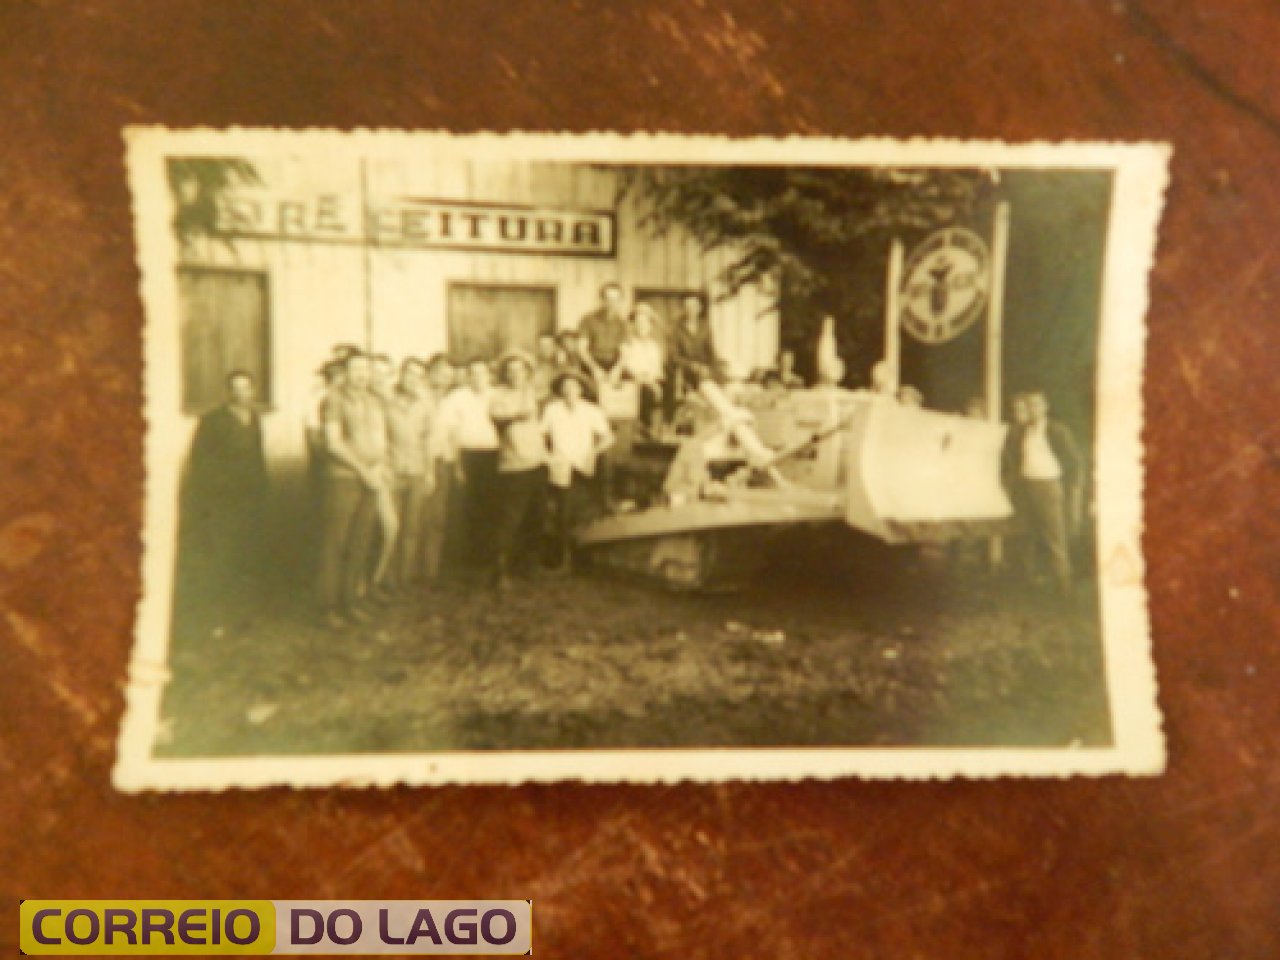 Primeira patrola adquirida pela prefeitura. Gestão de Arnaldo. Nesta foto aparece o prefeito e funcionários da prefeitura na época. Final da década de 1960.